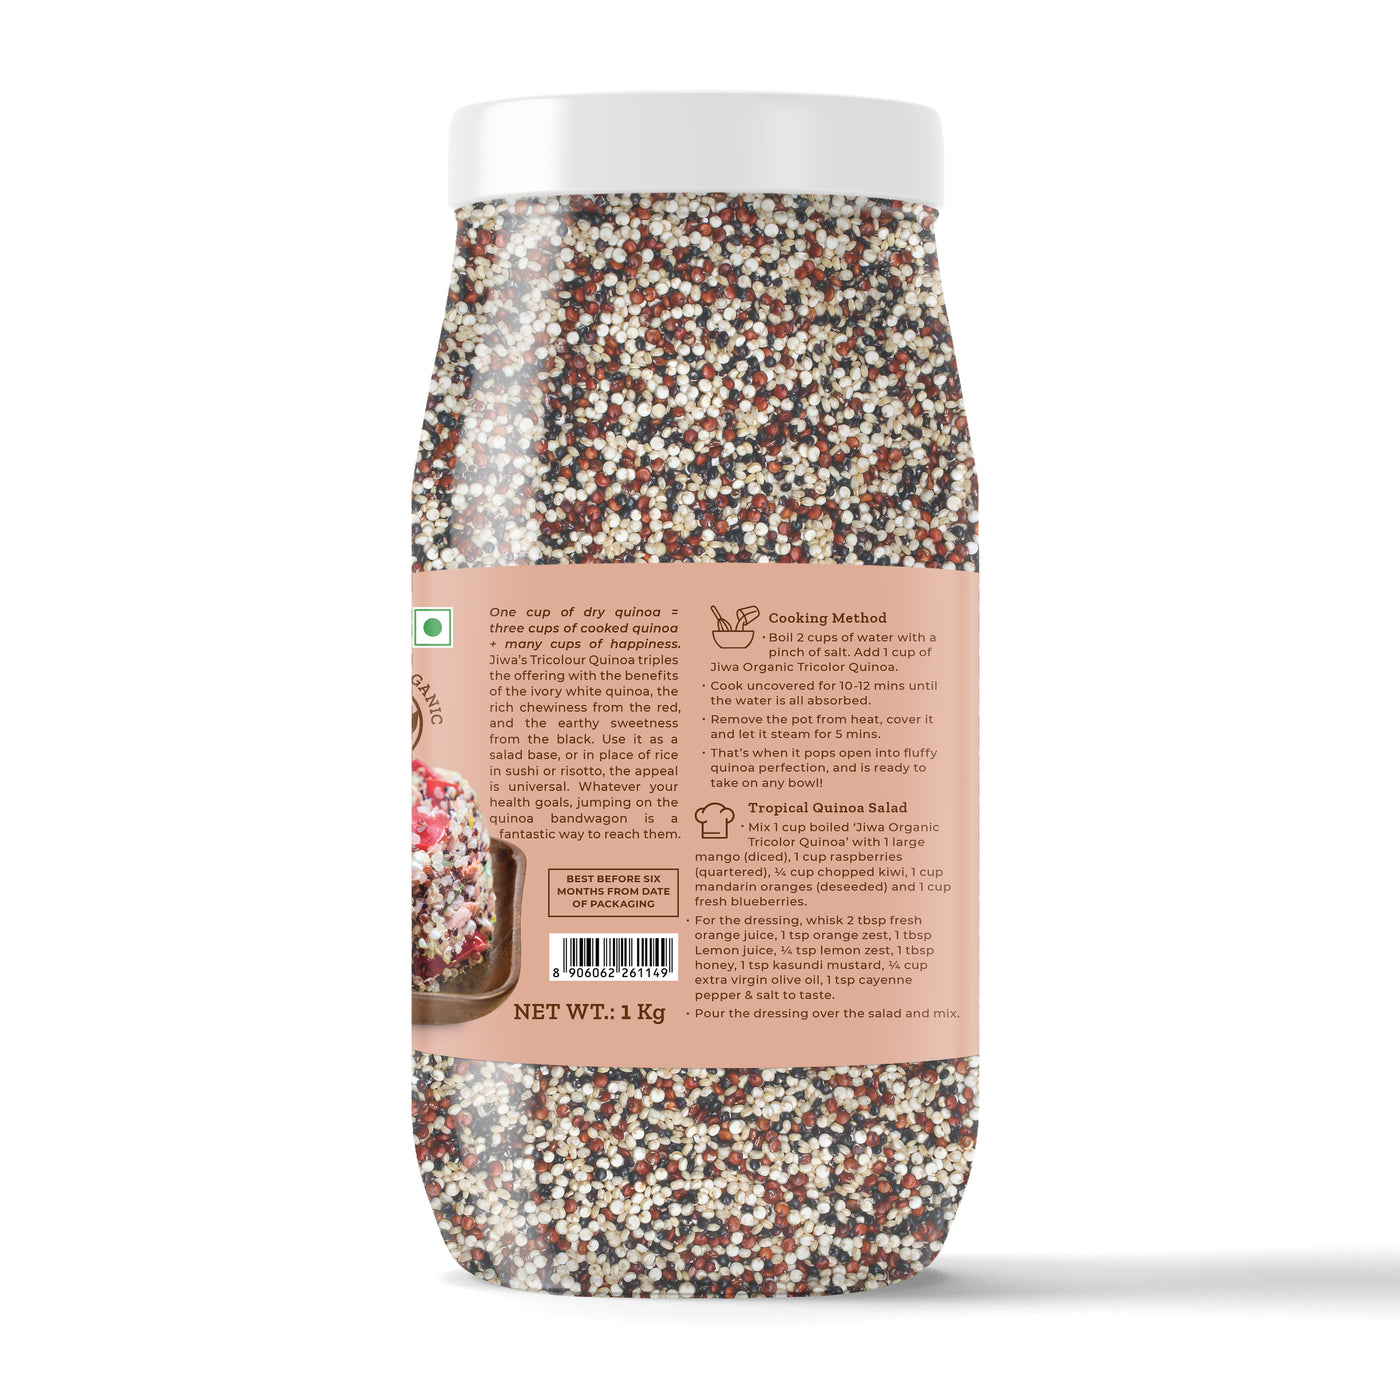 jiwa organic tricolor quinoa recipe guide online